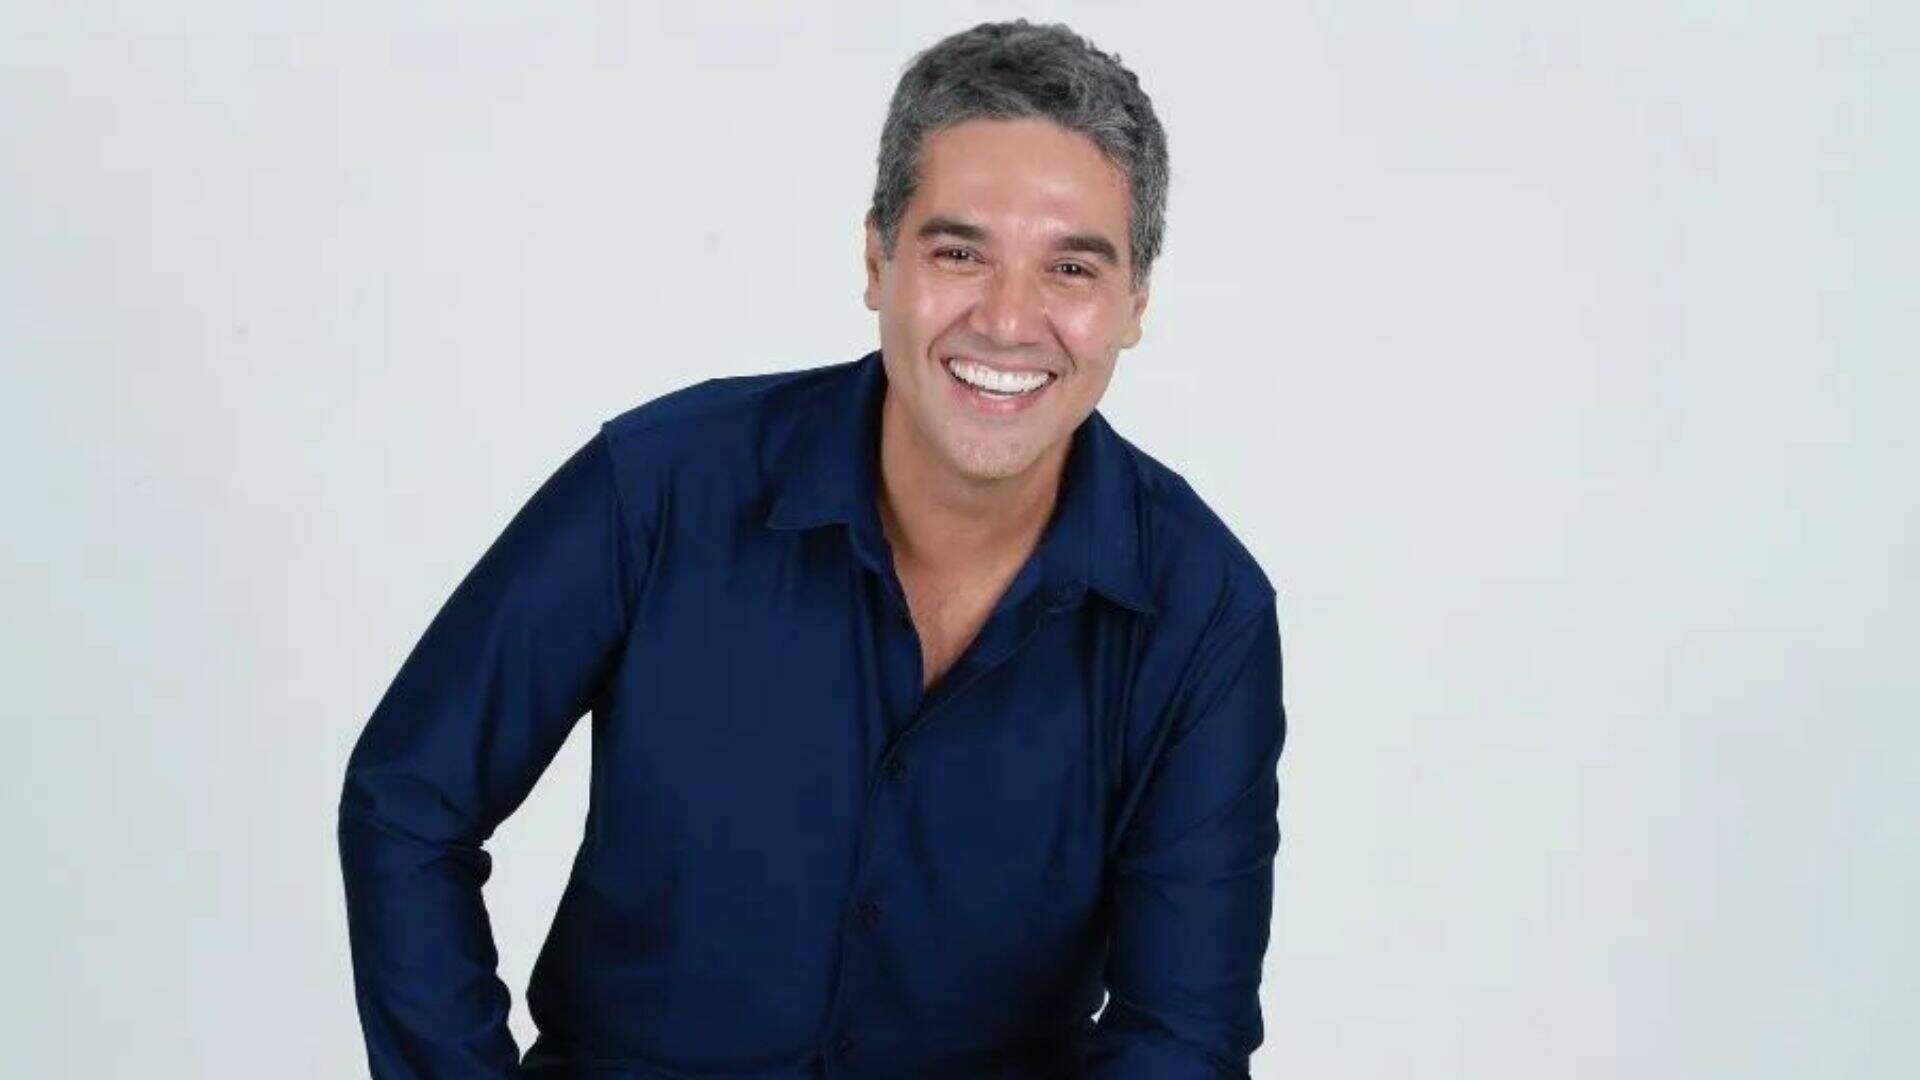 Fernando Sampaio é um ator brasileiro conhecido por seus papéis em novelas da RecordTV. Além de atuar, também trabalhou como repórter especial para o Portal R7. Em 2018, fez sua estreia na Rede Globo na novela 